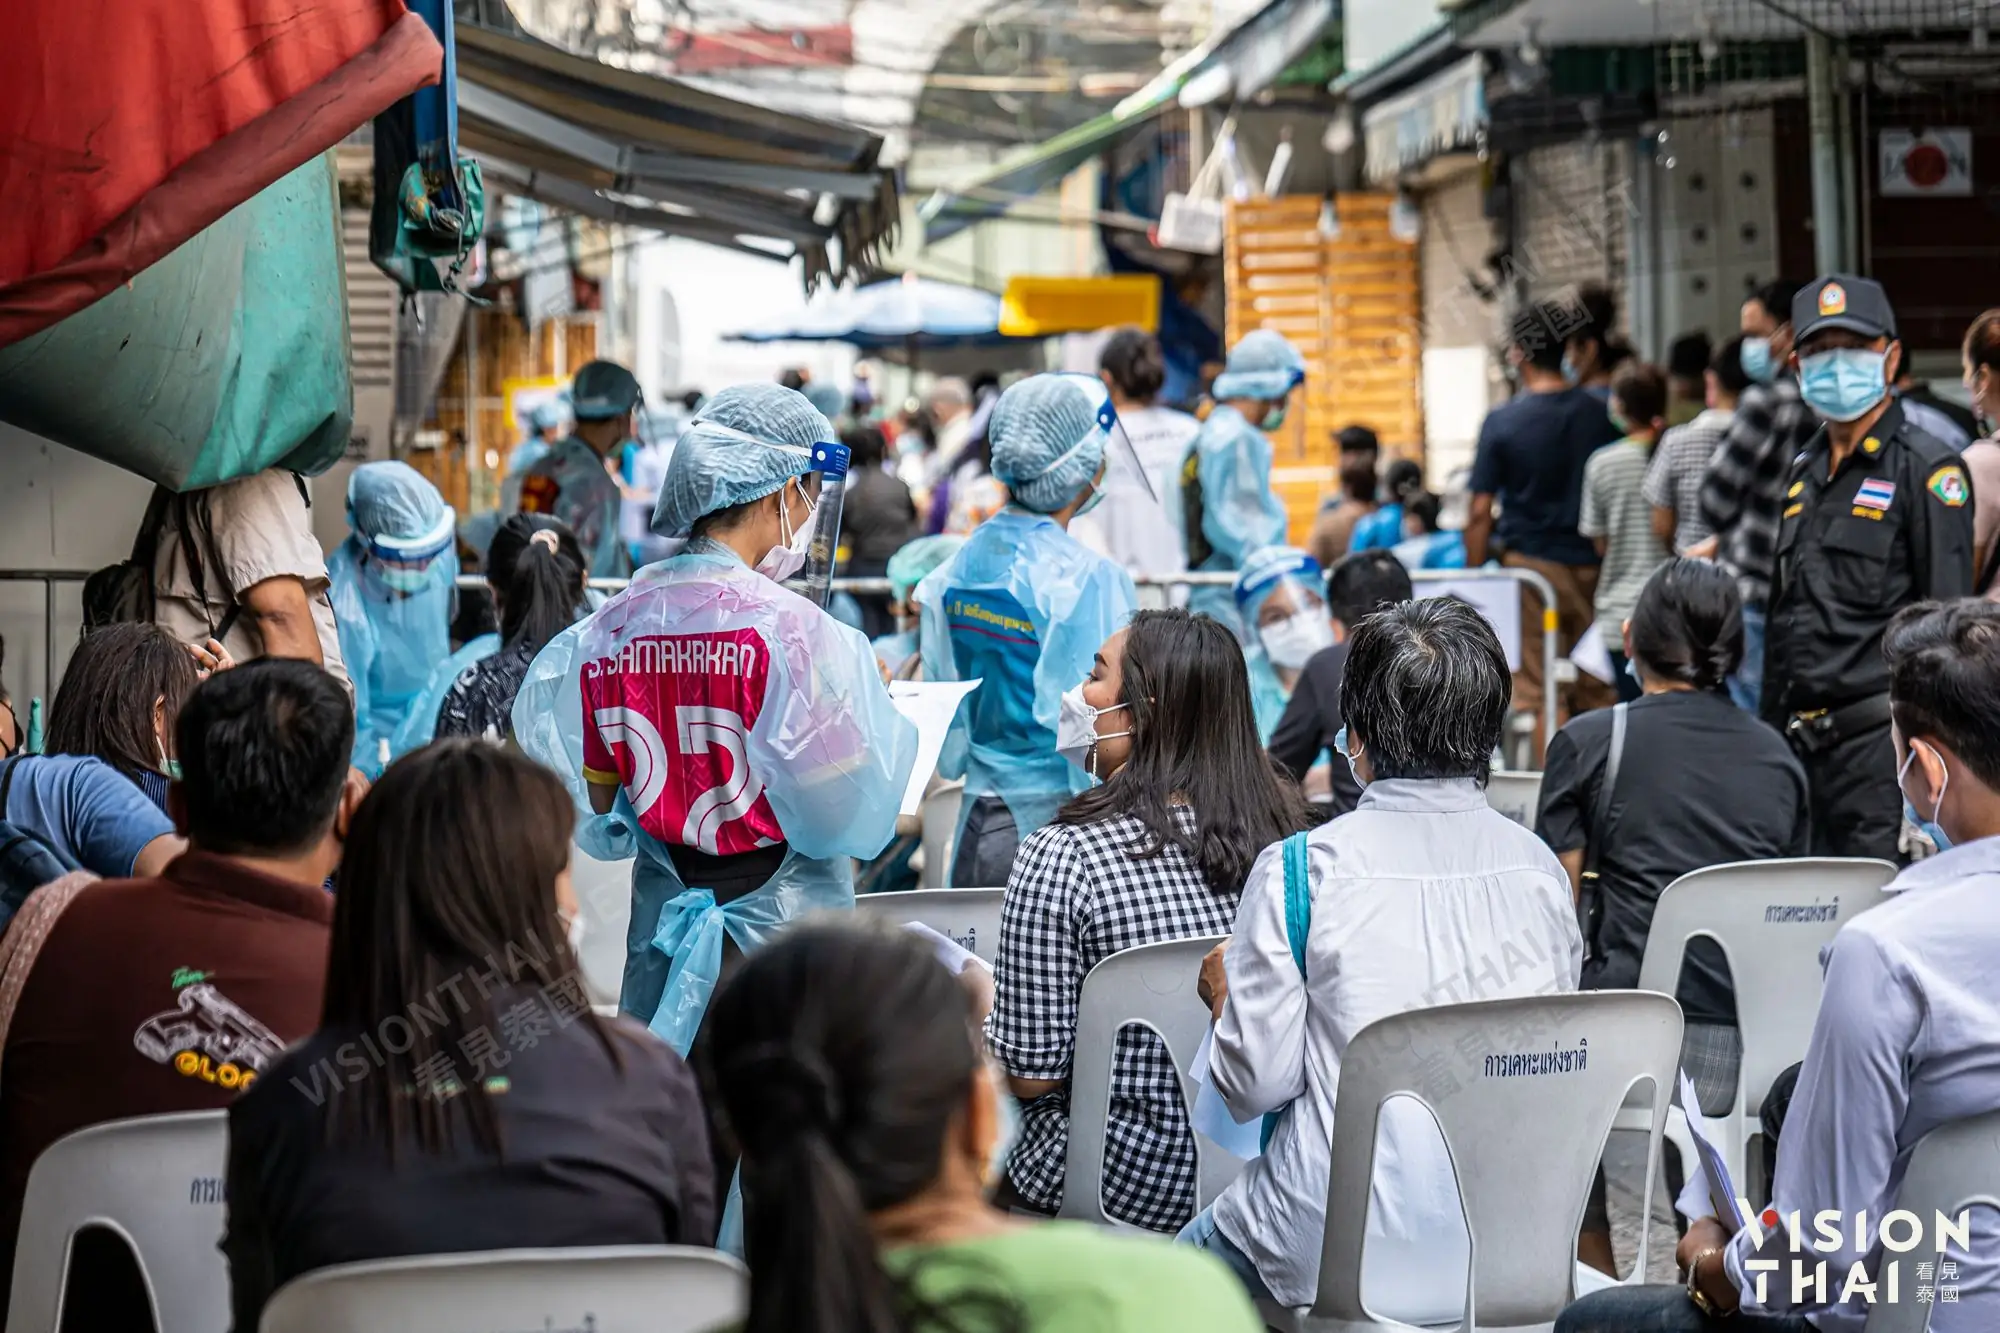 泰國疫苗覆蓋率提升 累計劑次破8000萬（VISION THAI 看見泰國）